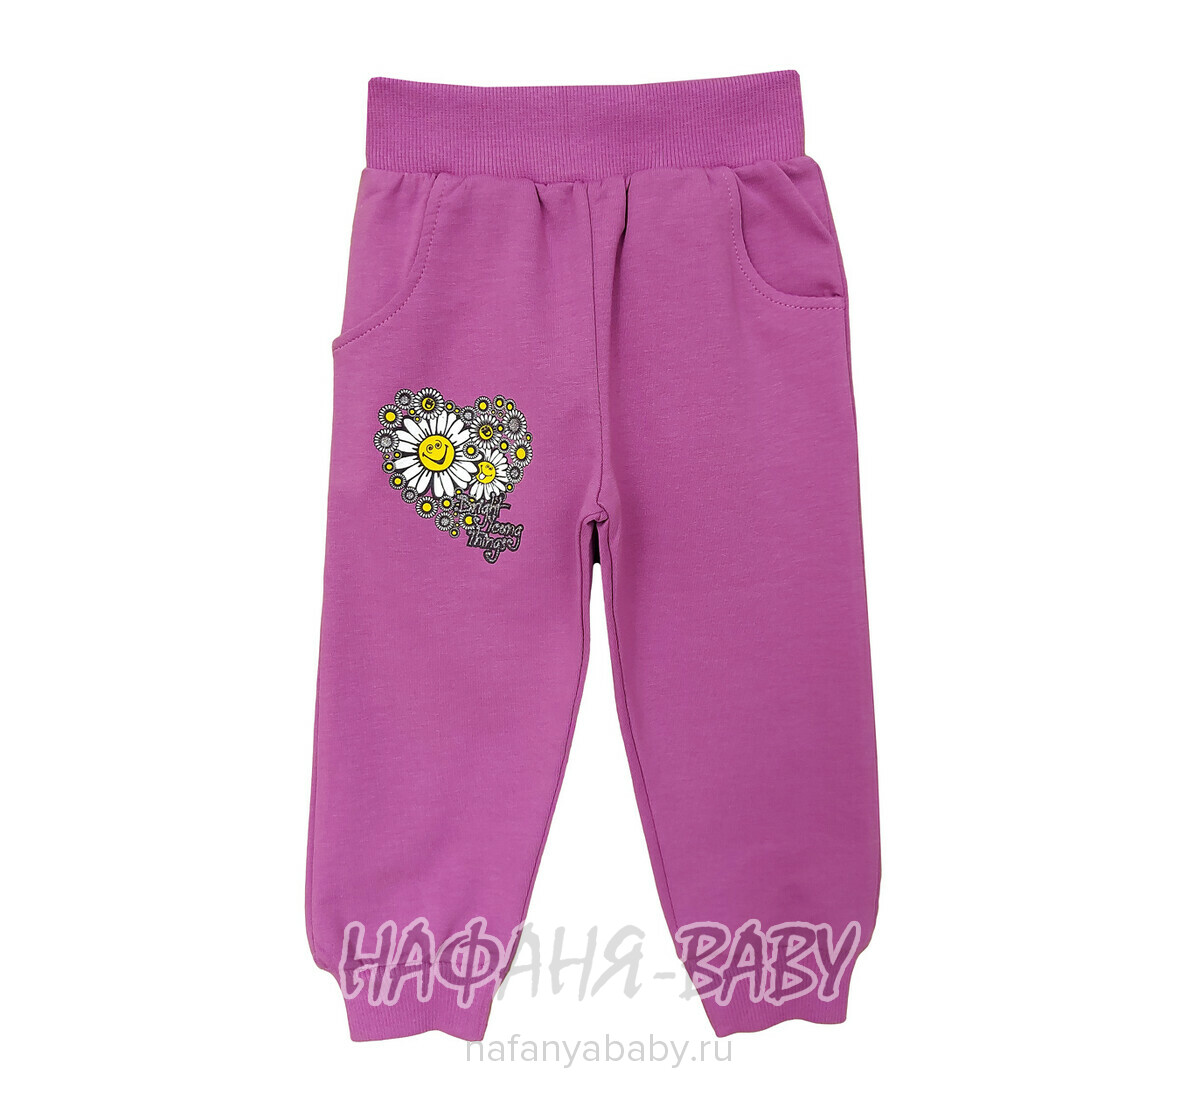 Детские брюки для девочки UNRULY арт: 5664, 1-4 года, оптом Турция